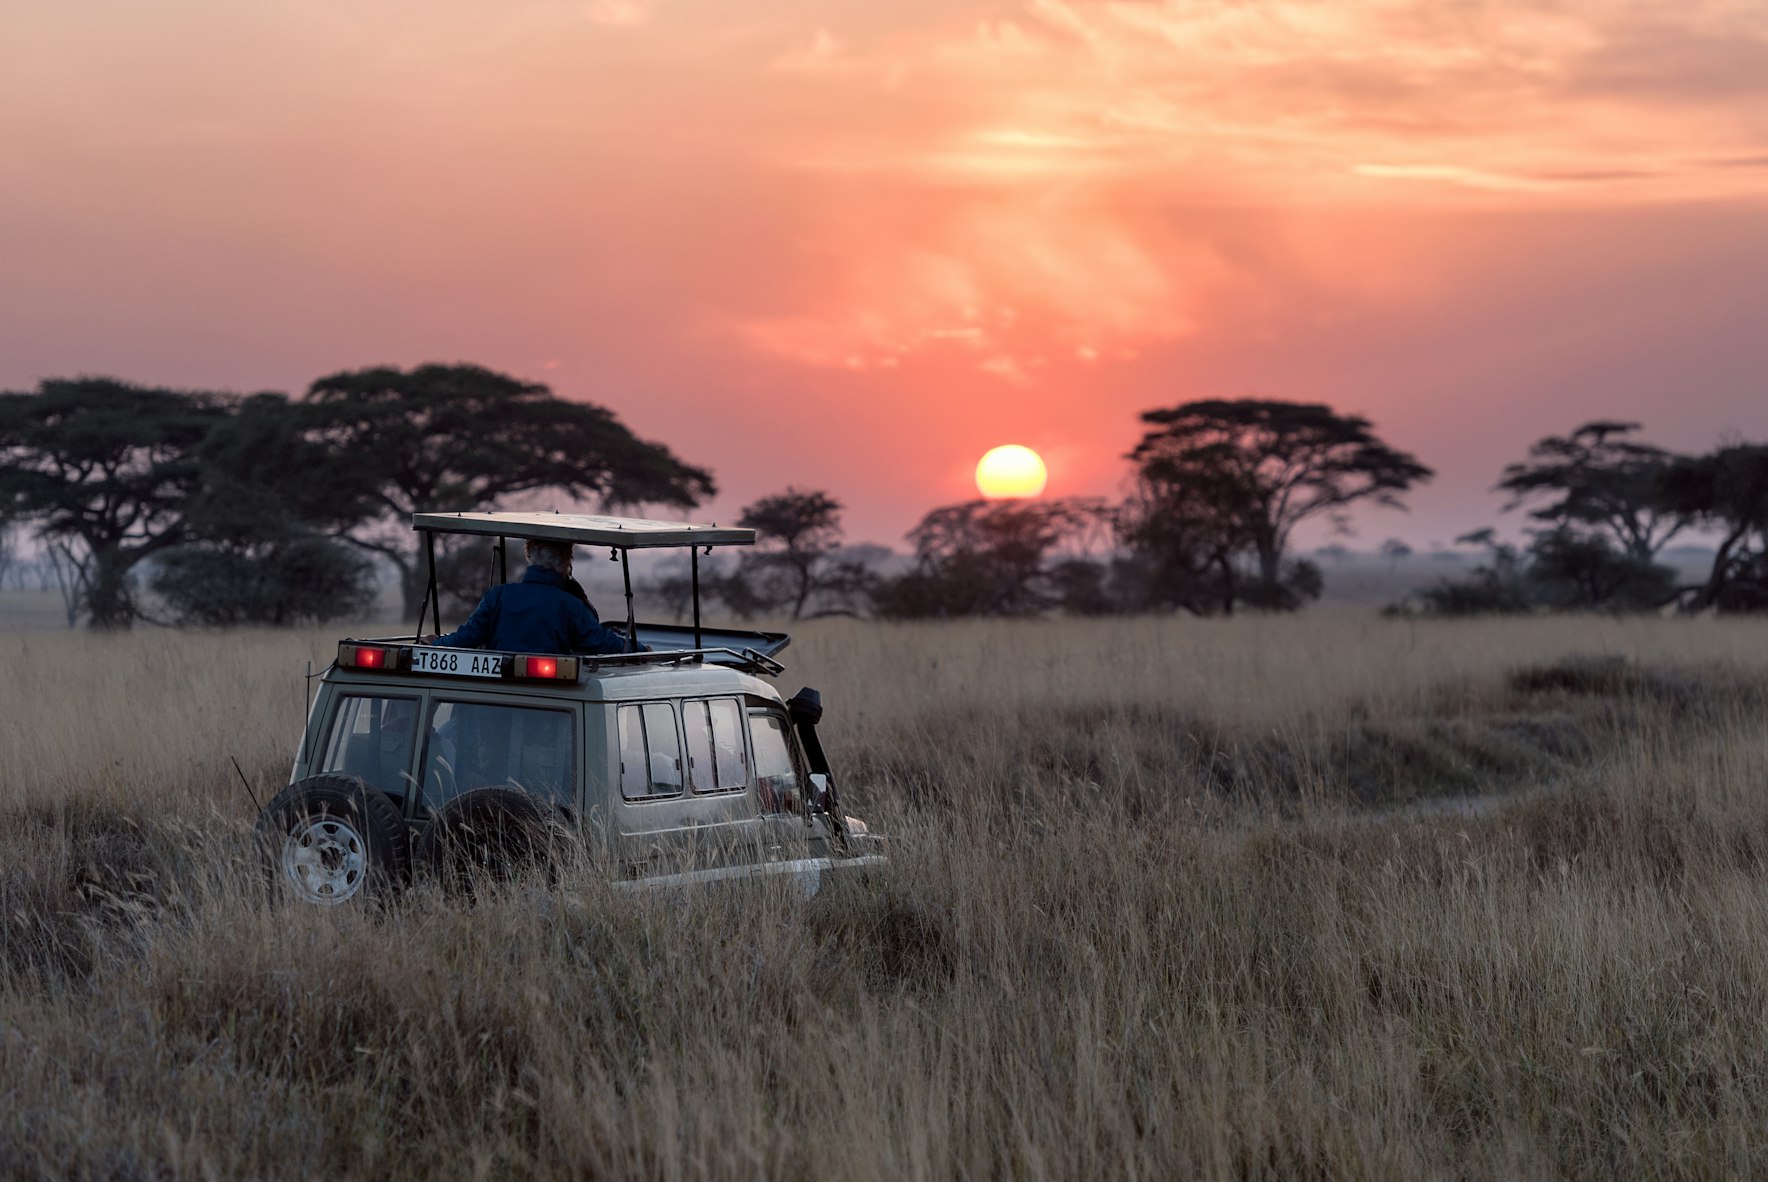 A jeep on Safari in the bush